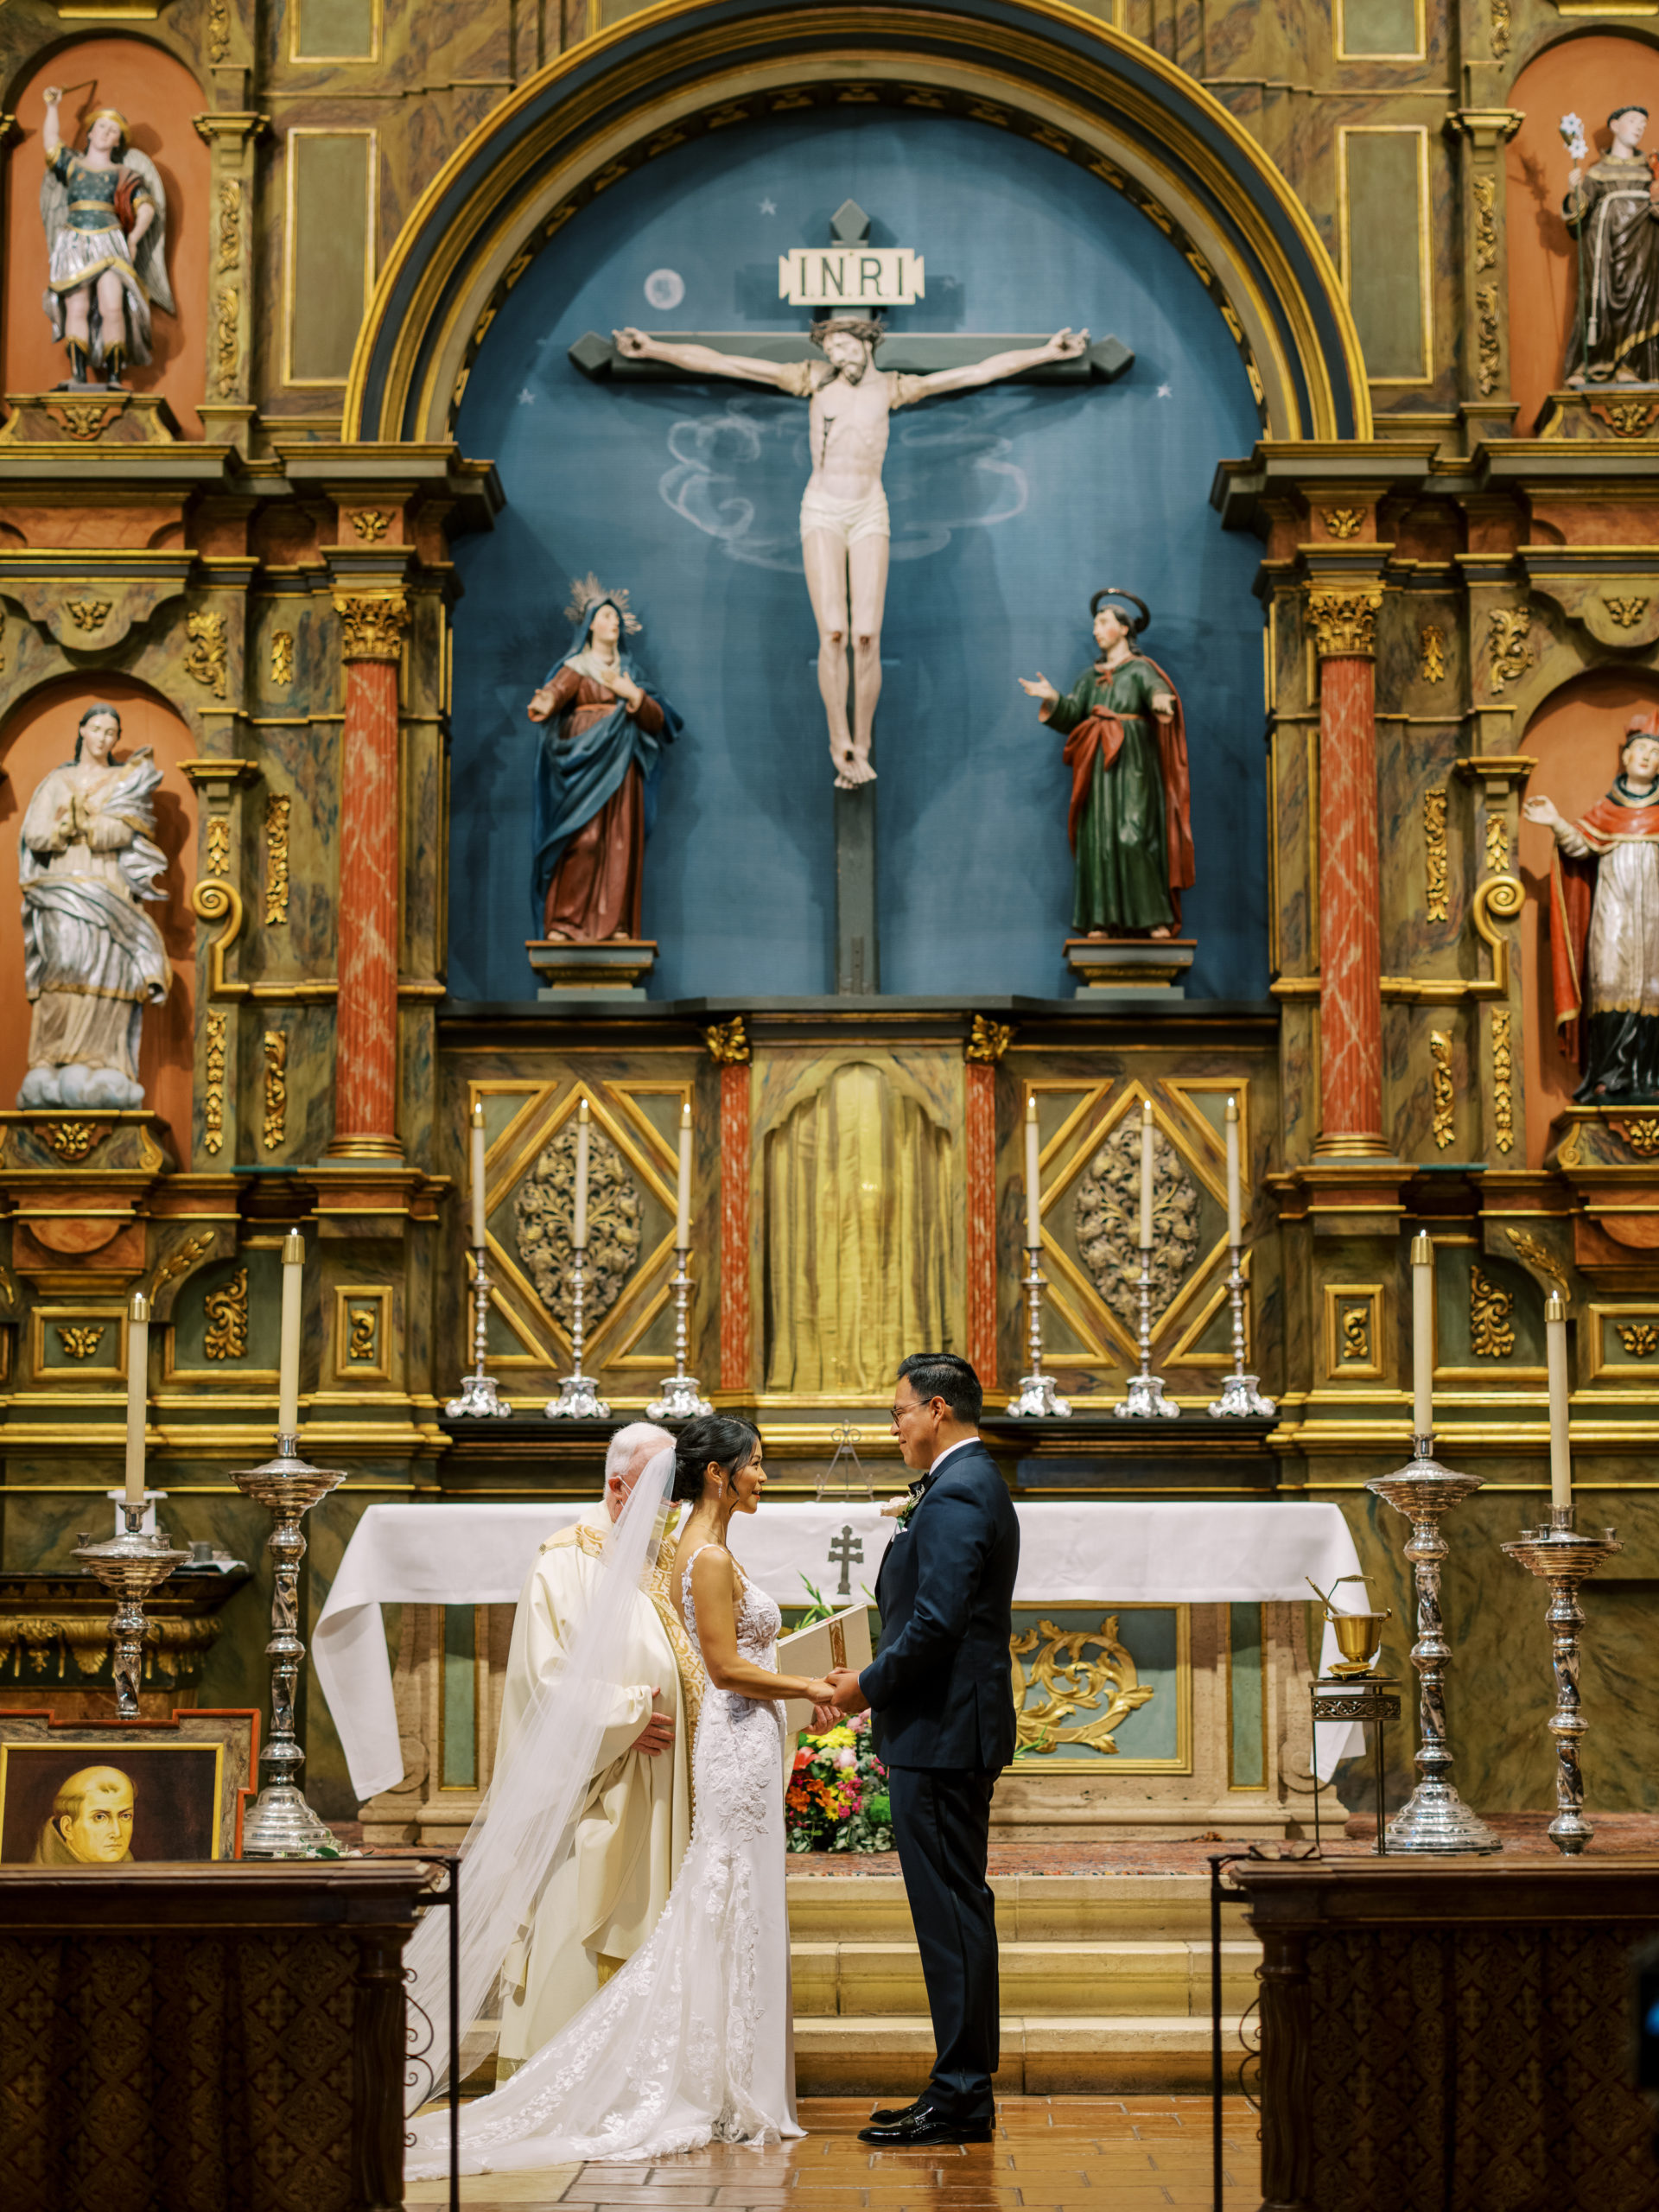 Carmel Mission Basilica Wedding Ceremony 2021